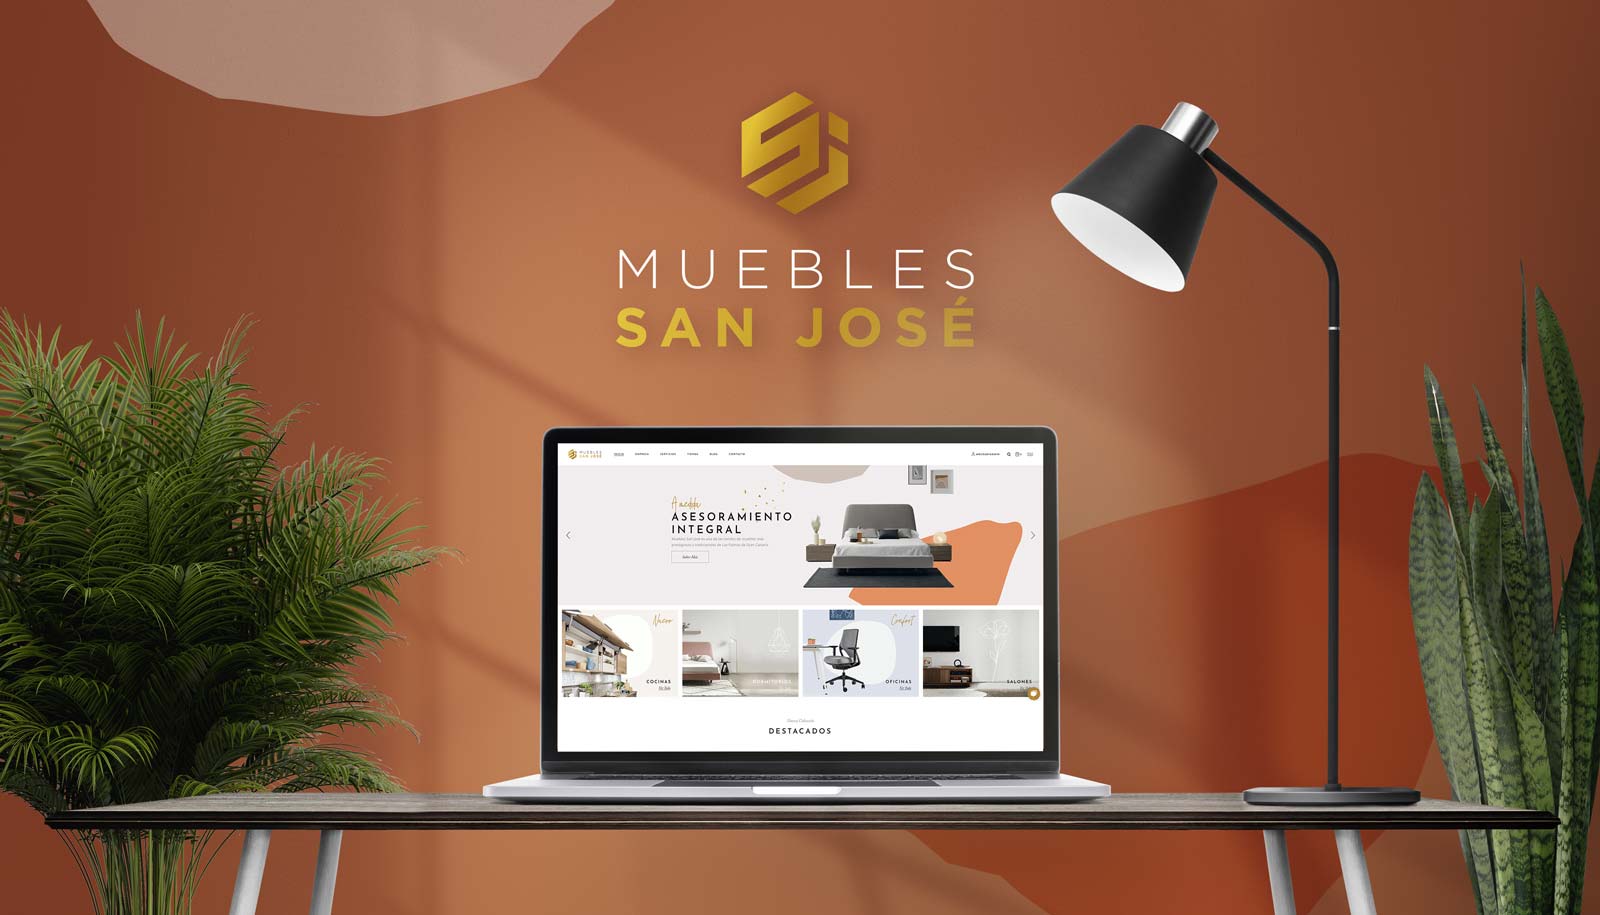 Nuevo local, lanzamiento de web y nueva imagen de marca Muebles San José